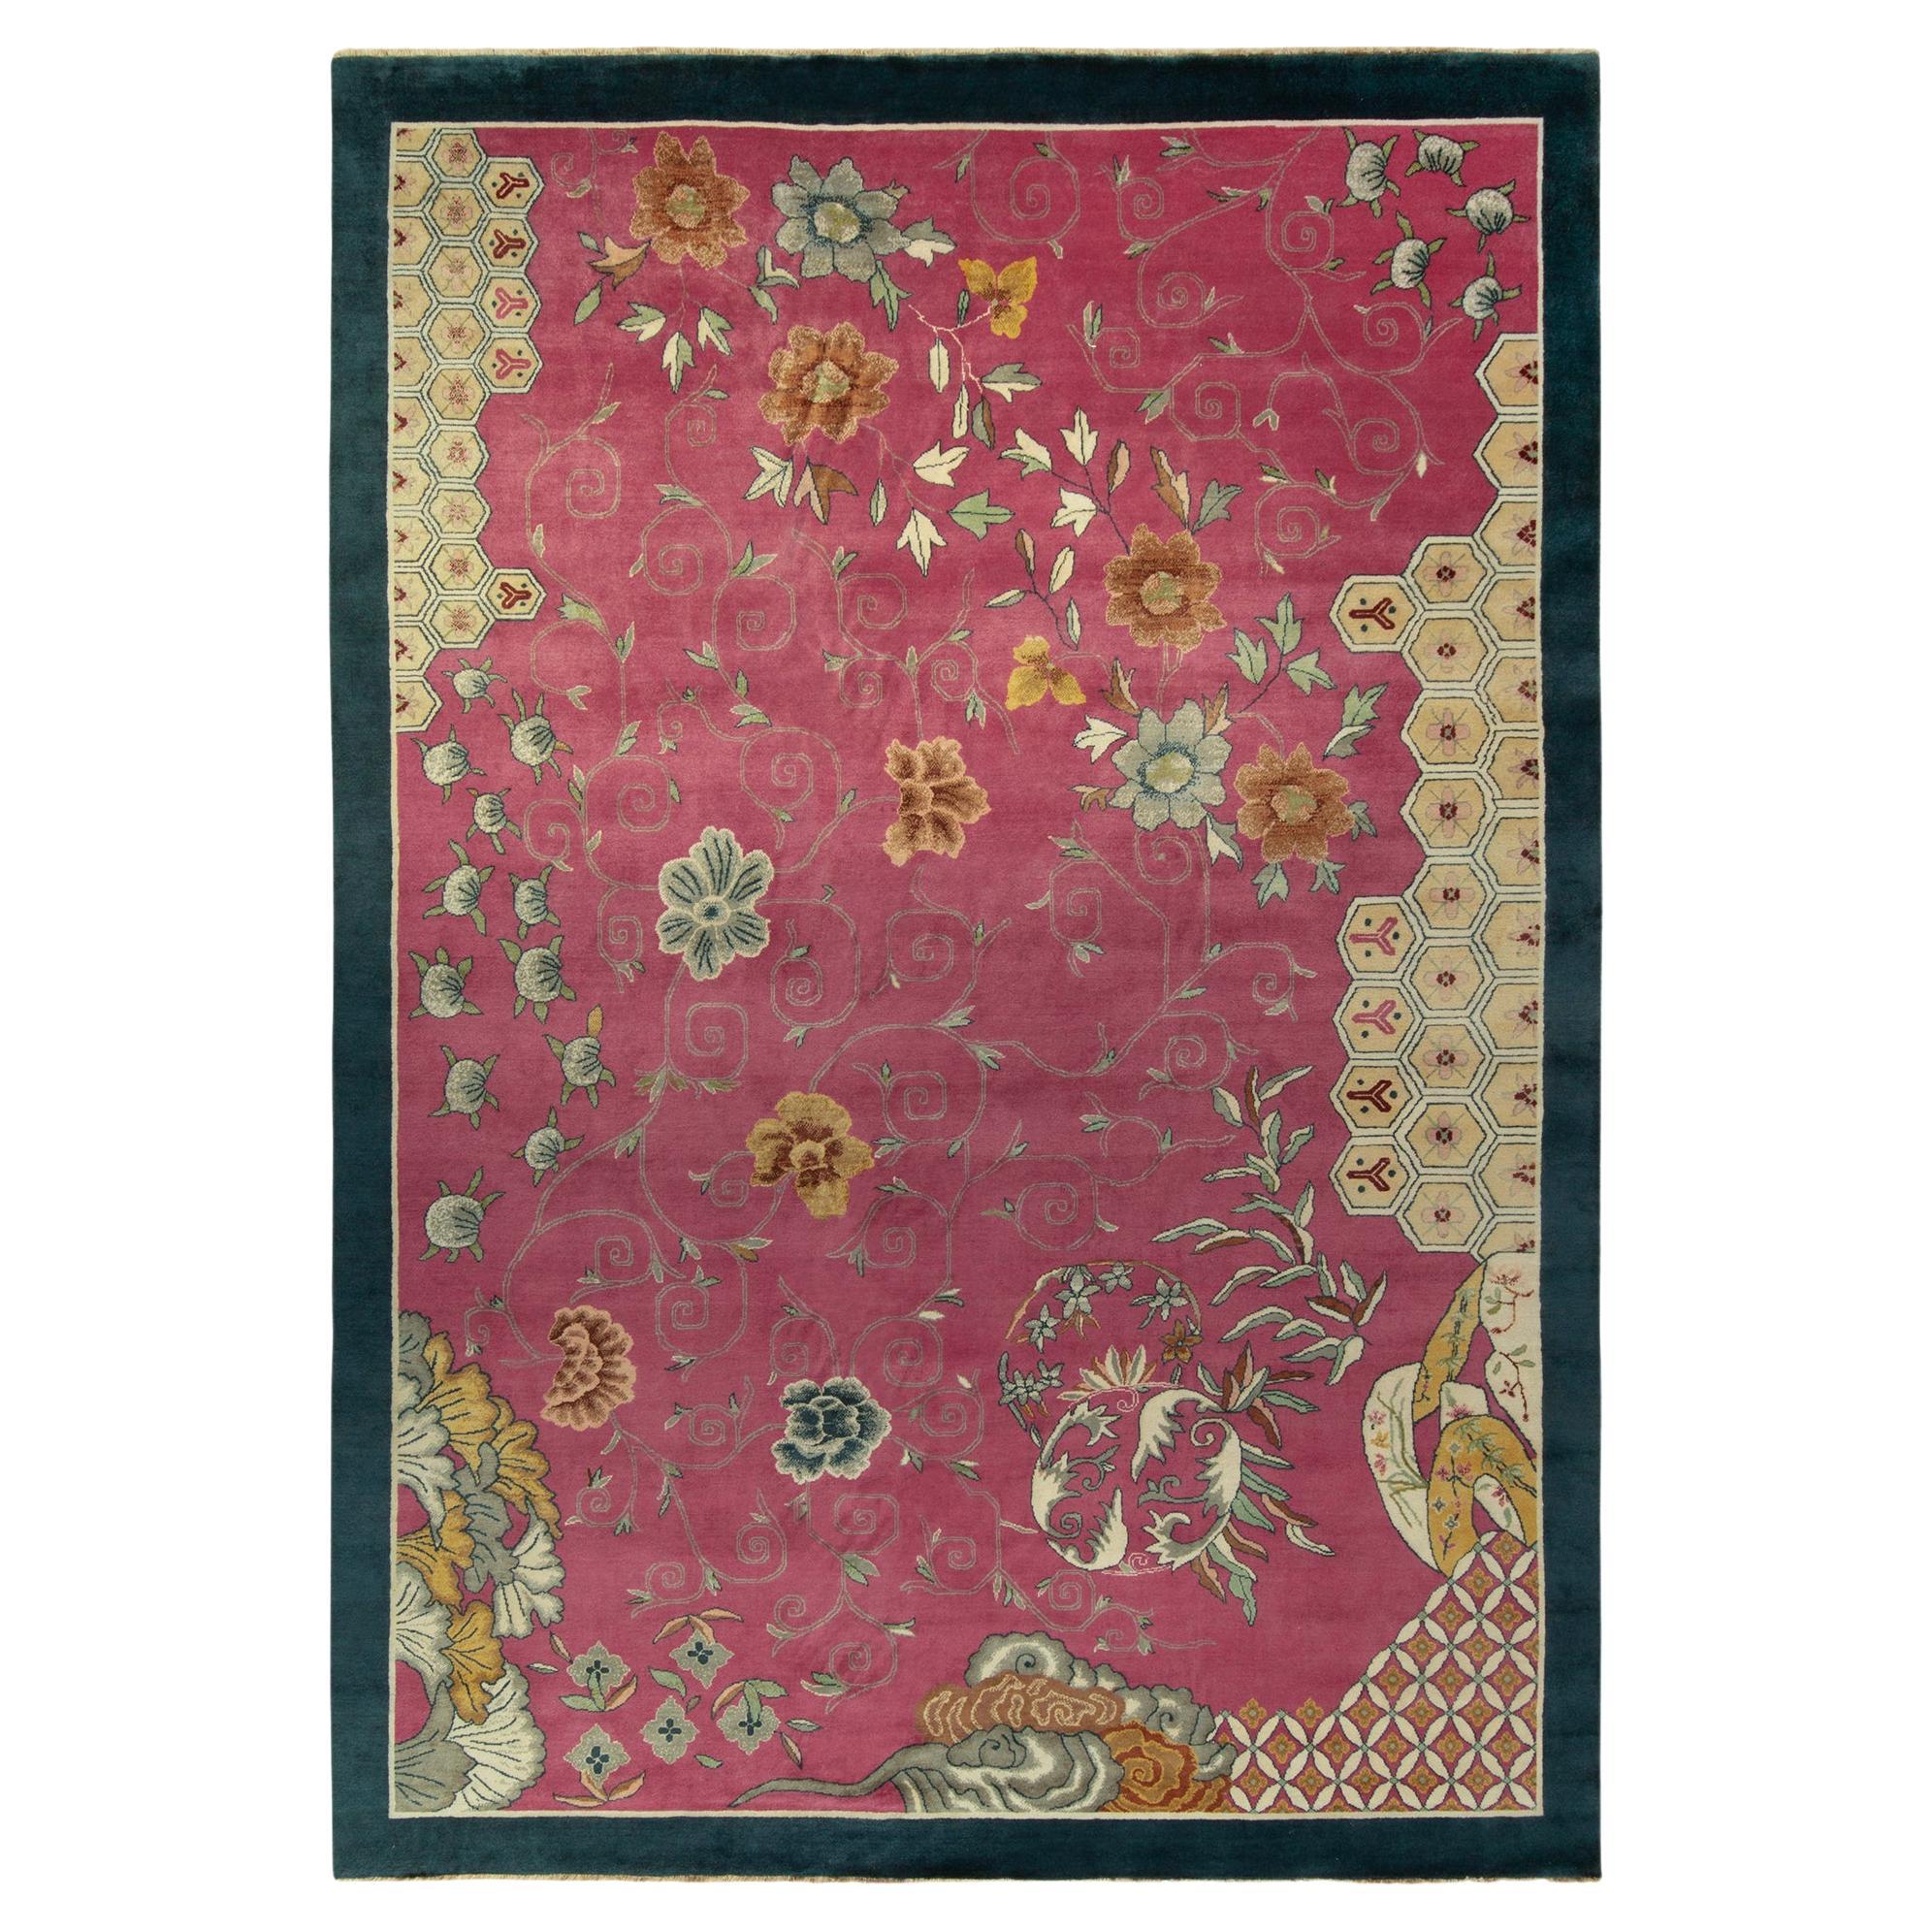 Chinesischer Teppich im Deko-Stil von Teppich &amp;amp; Kilims in Rosa mit blauer Bordüre, Goldblumen